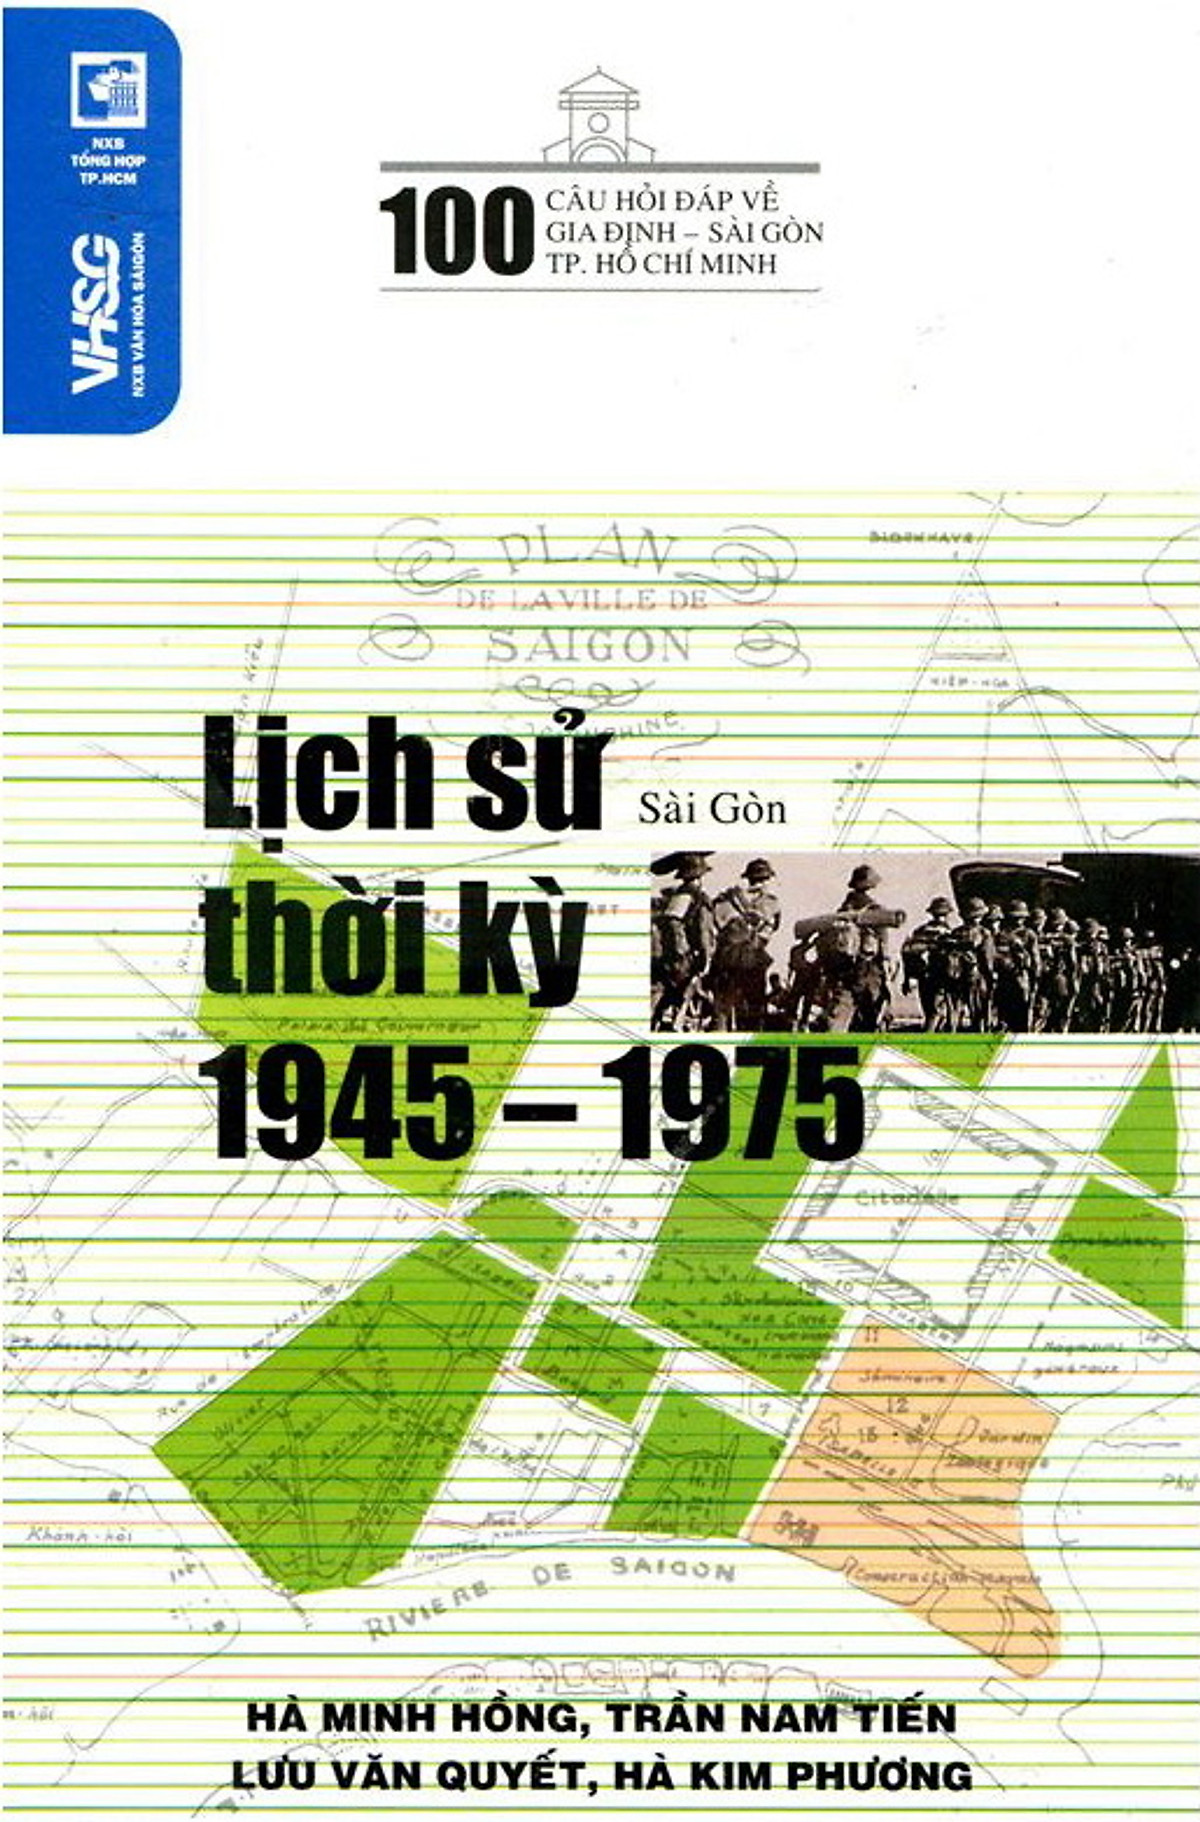 pic-100 Câu Hỏi Về Gia Định Sài Gòn - Lịch Sử Thời Kỳ 1945 - 1975